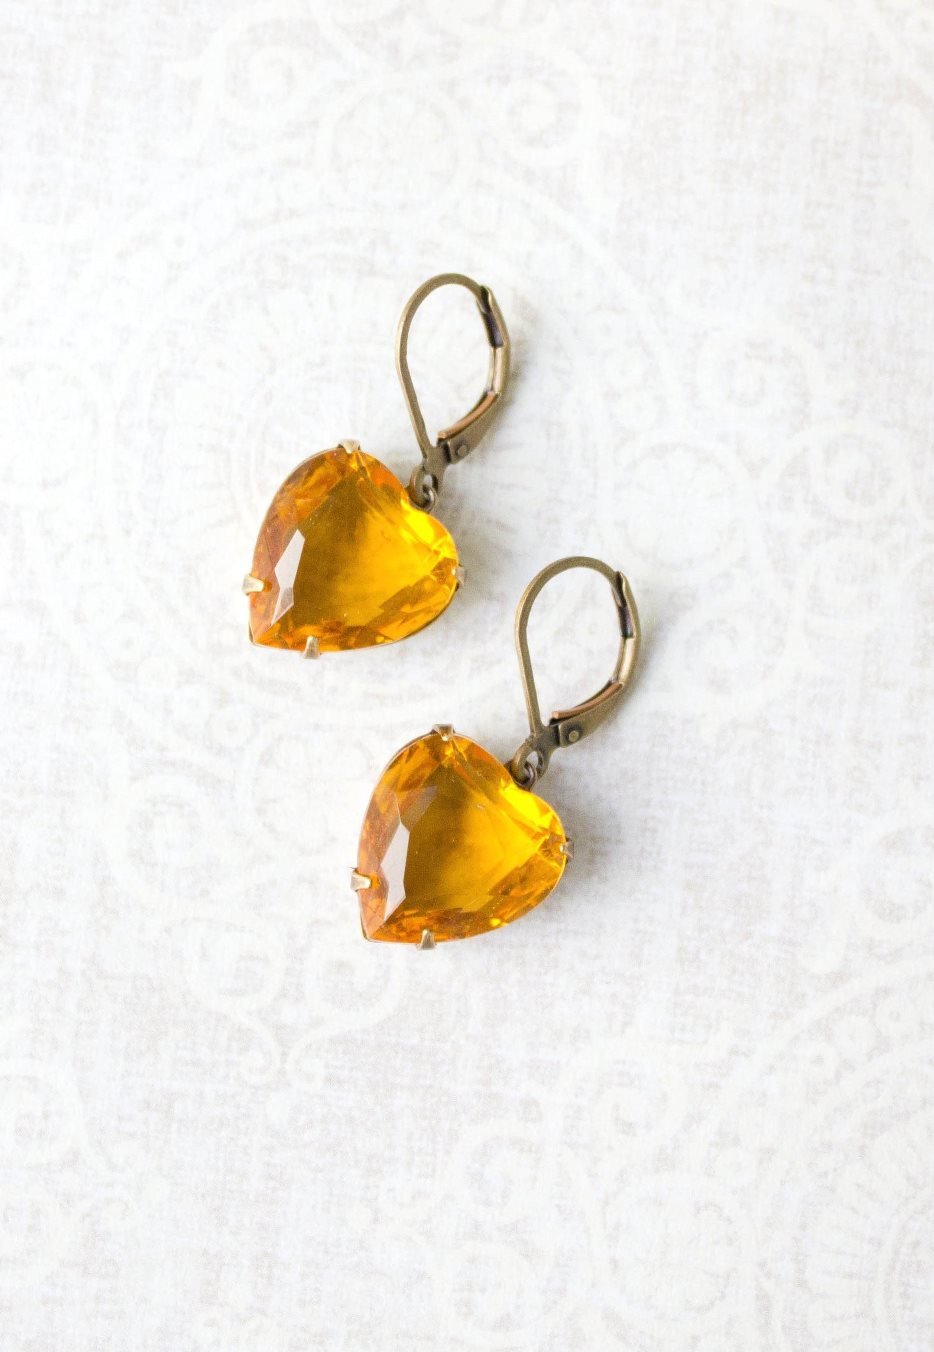 Yellow Earrings Topaz Heart Earrings Golden Honey Vintage Glass Drop Valentines Day Sunflower Yellow Rhinestone Dangle Earrings